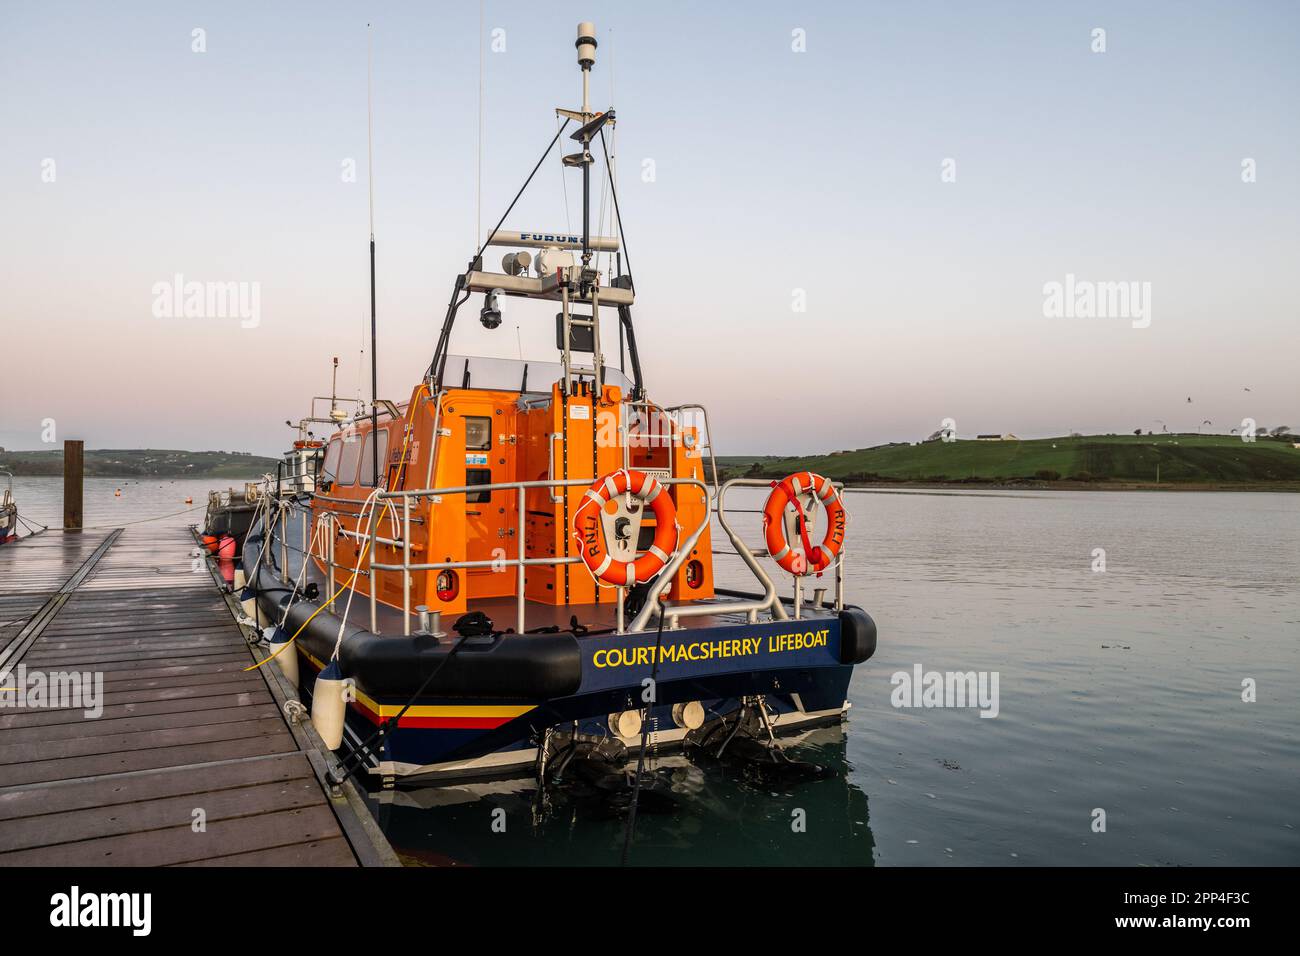 RNLI Lifeboat Val Adnams 13-45 amarré à Courtmacsherry, West Cork, Irlande. Banque D'Images